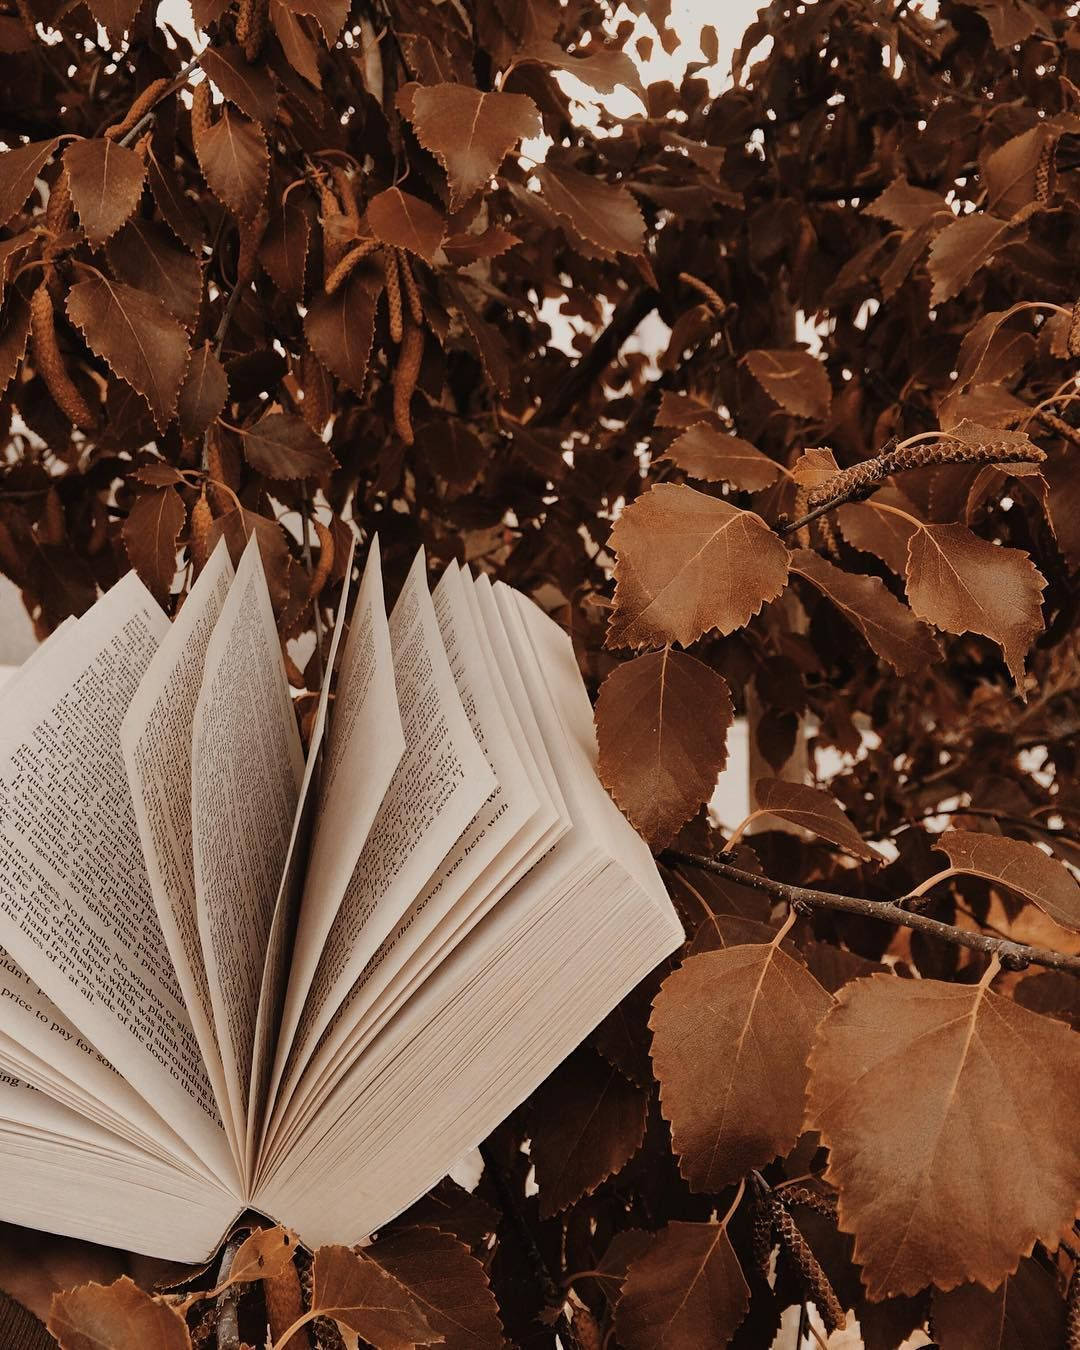 An open book lies on a tree branch - Light brown, books